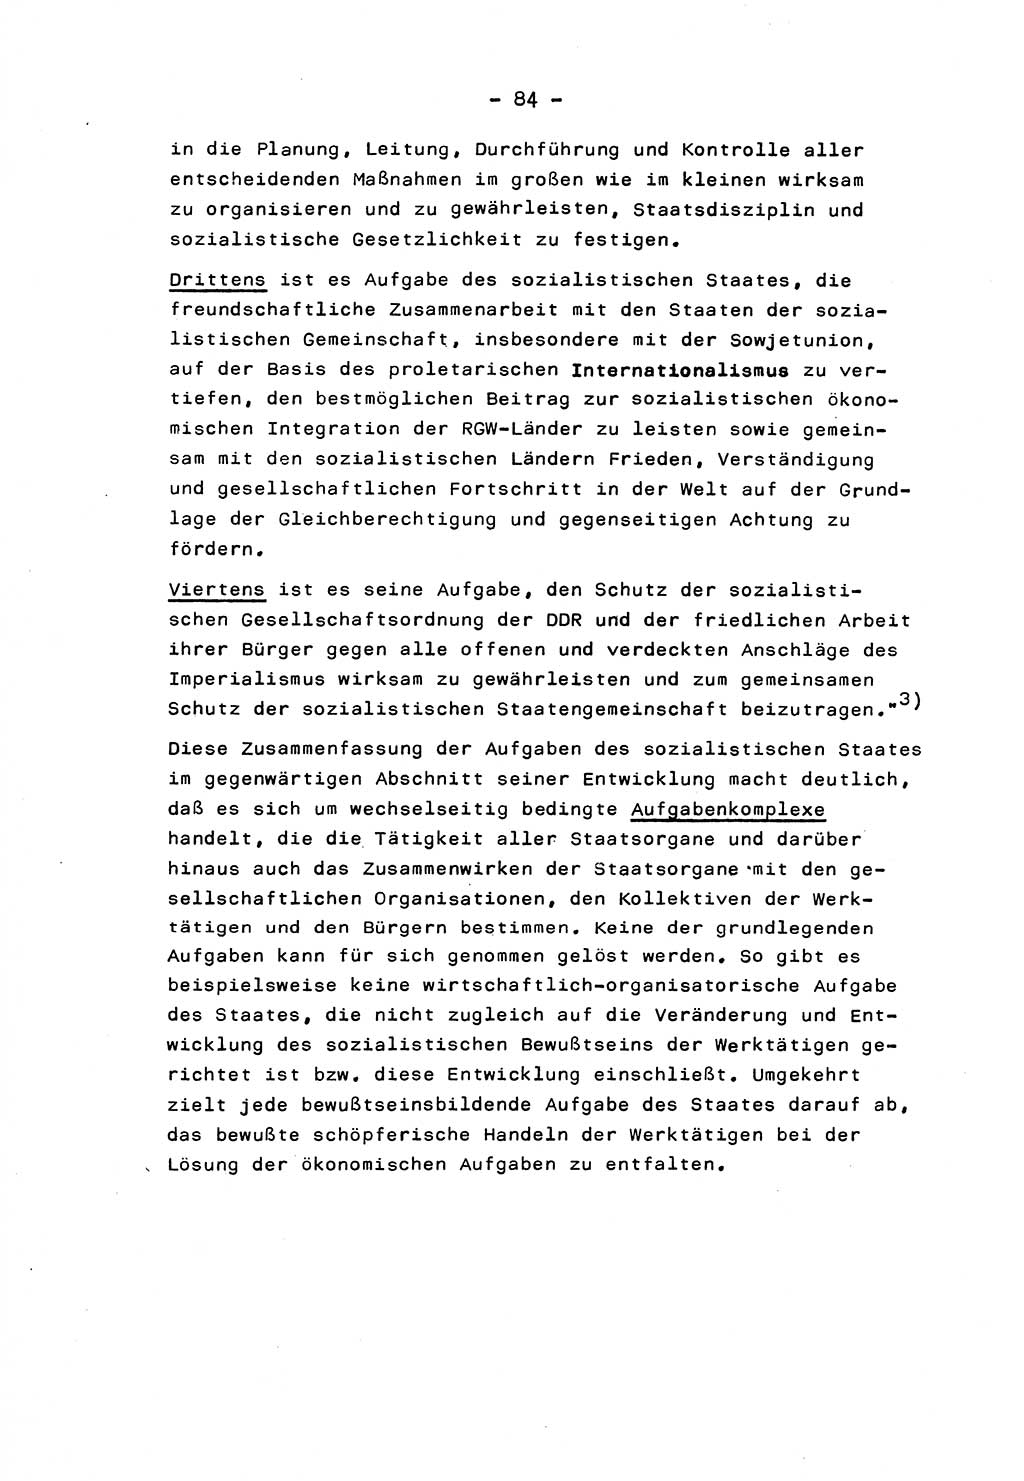 Marxistisch-leninistische Staats- und Rechtstheorie [Deutsche Demokratische Republik (DDR)] 1975, Seite 84 (ML St.-R.-Th. DDR 1975, S. 84)